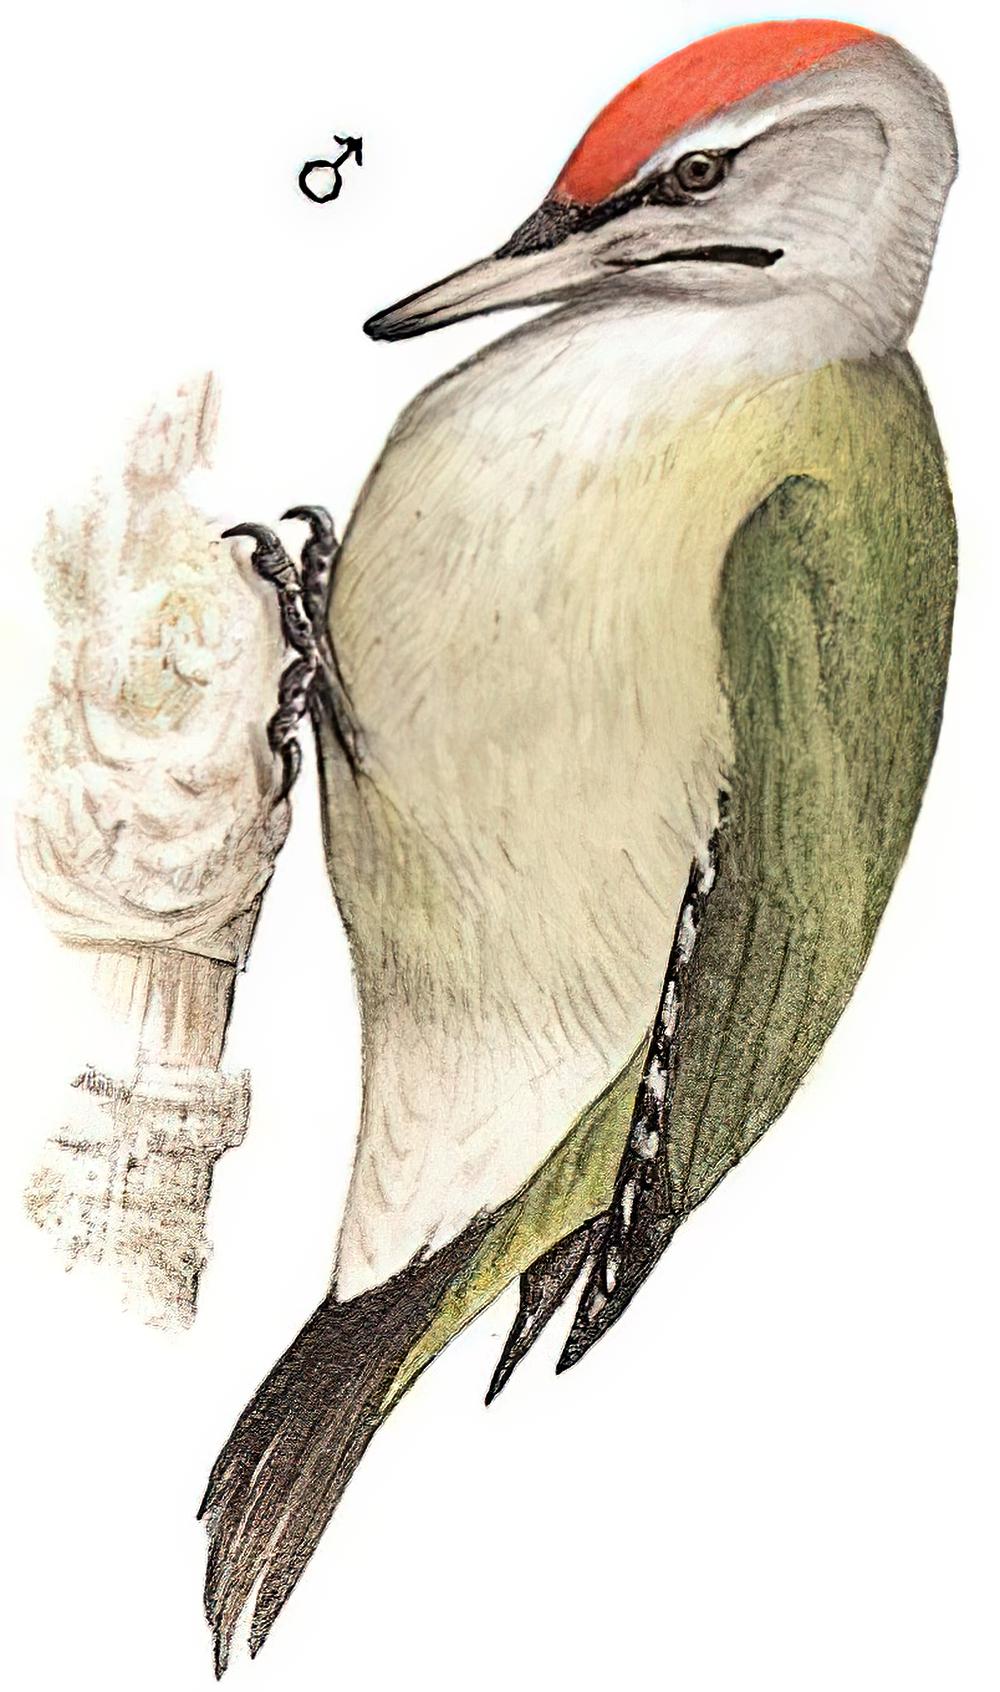 灰头绿啄木鸟 / Grey-headed Woodpecker / Picus canus